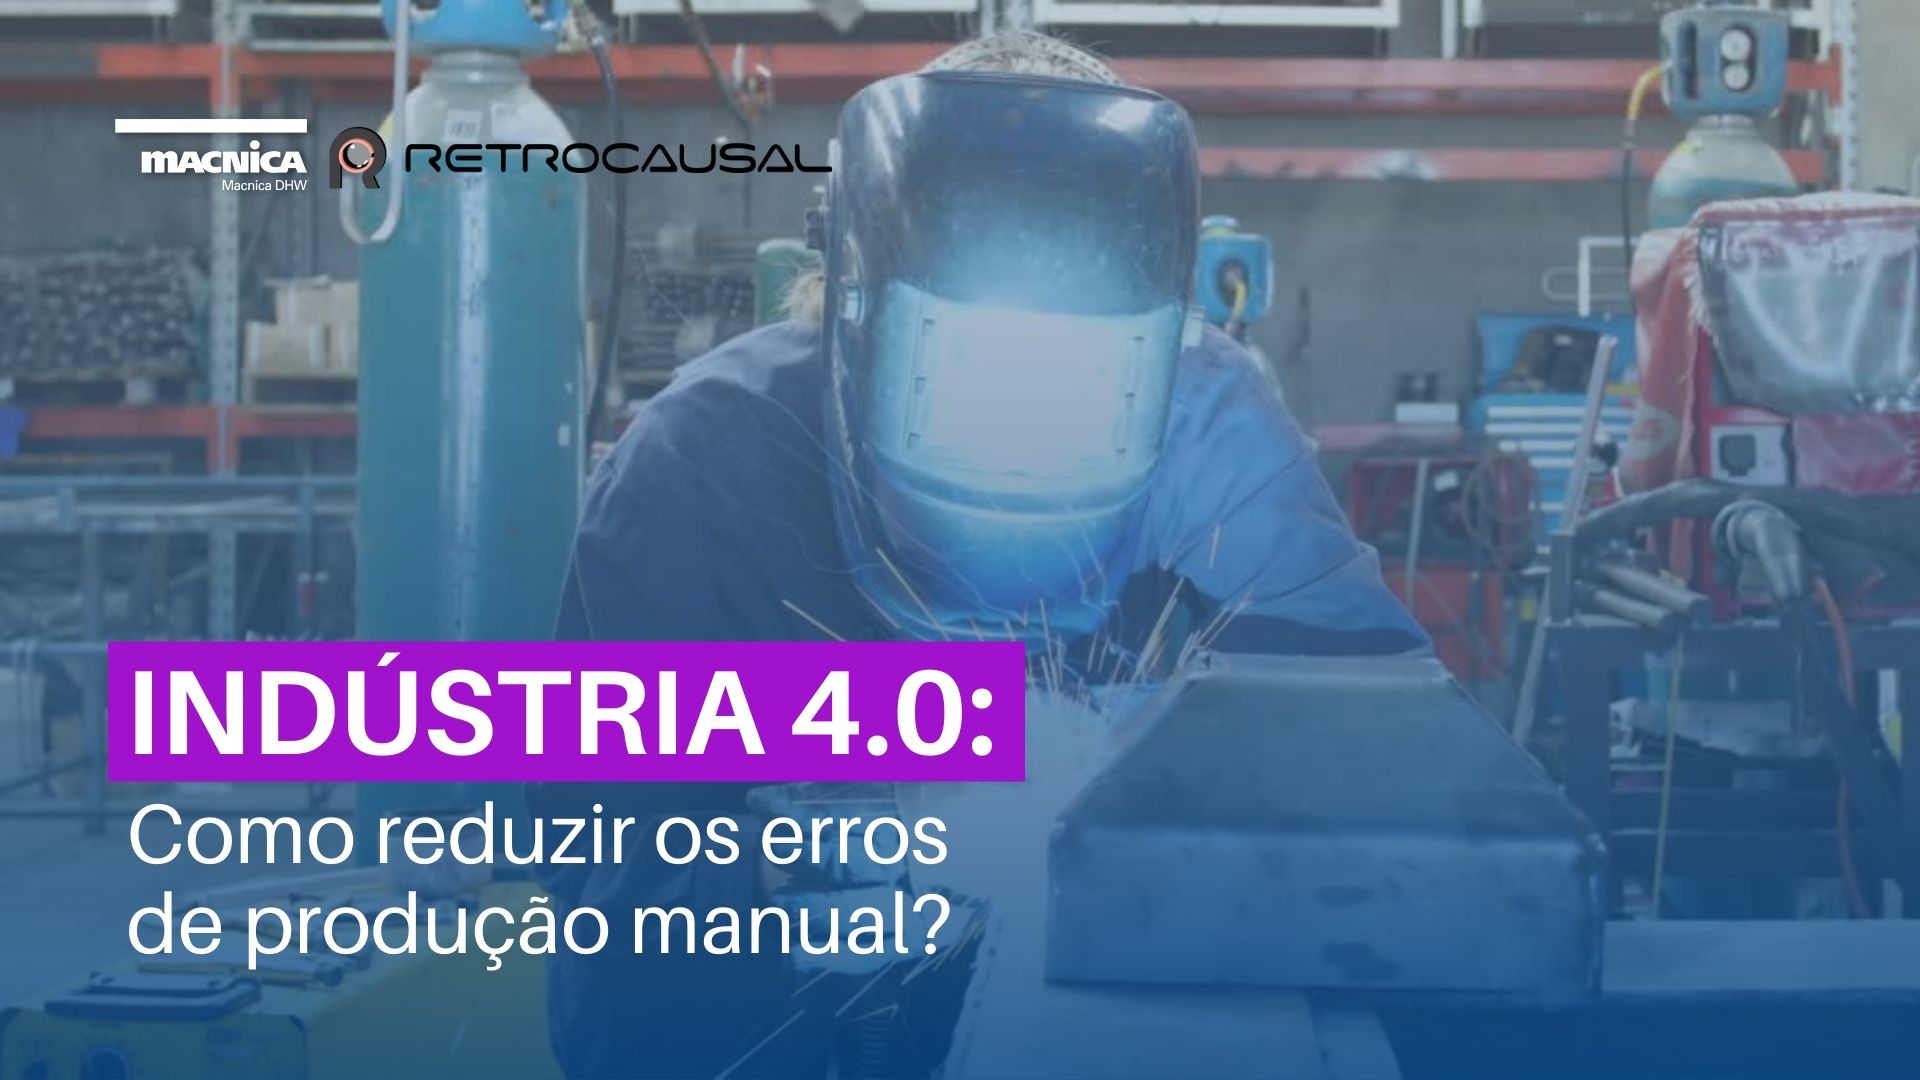 You are currently viewing Indústria 4.0: Como reduzir os erros de produção manual?